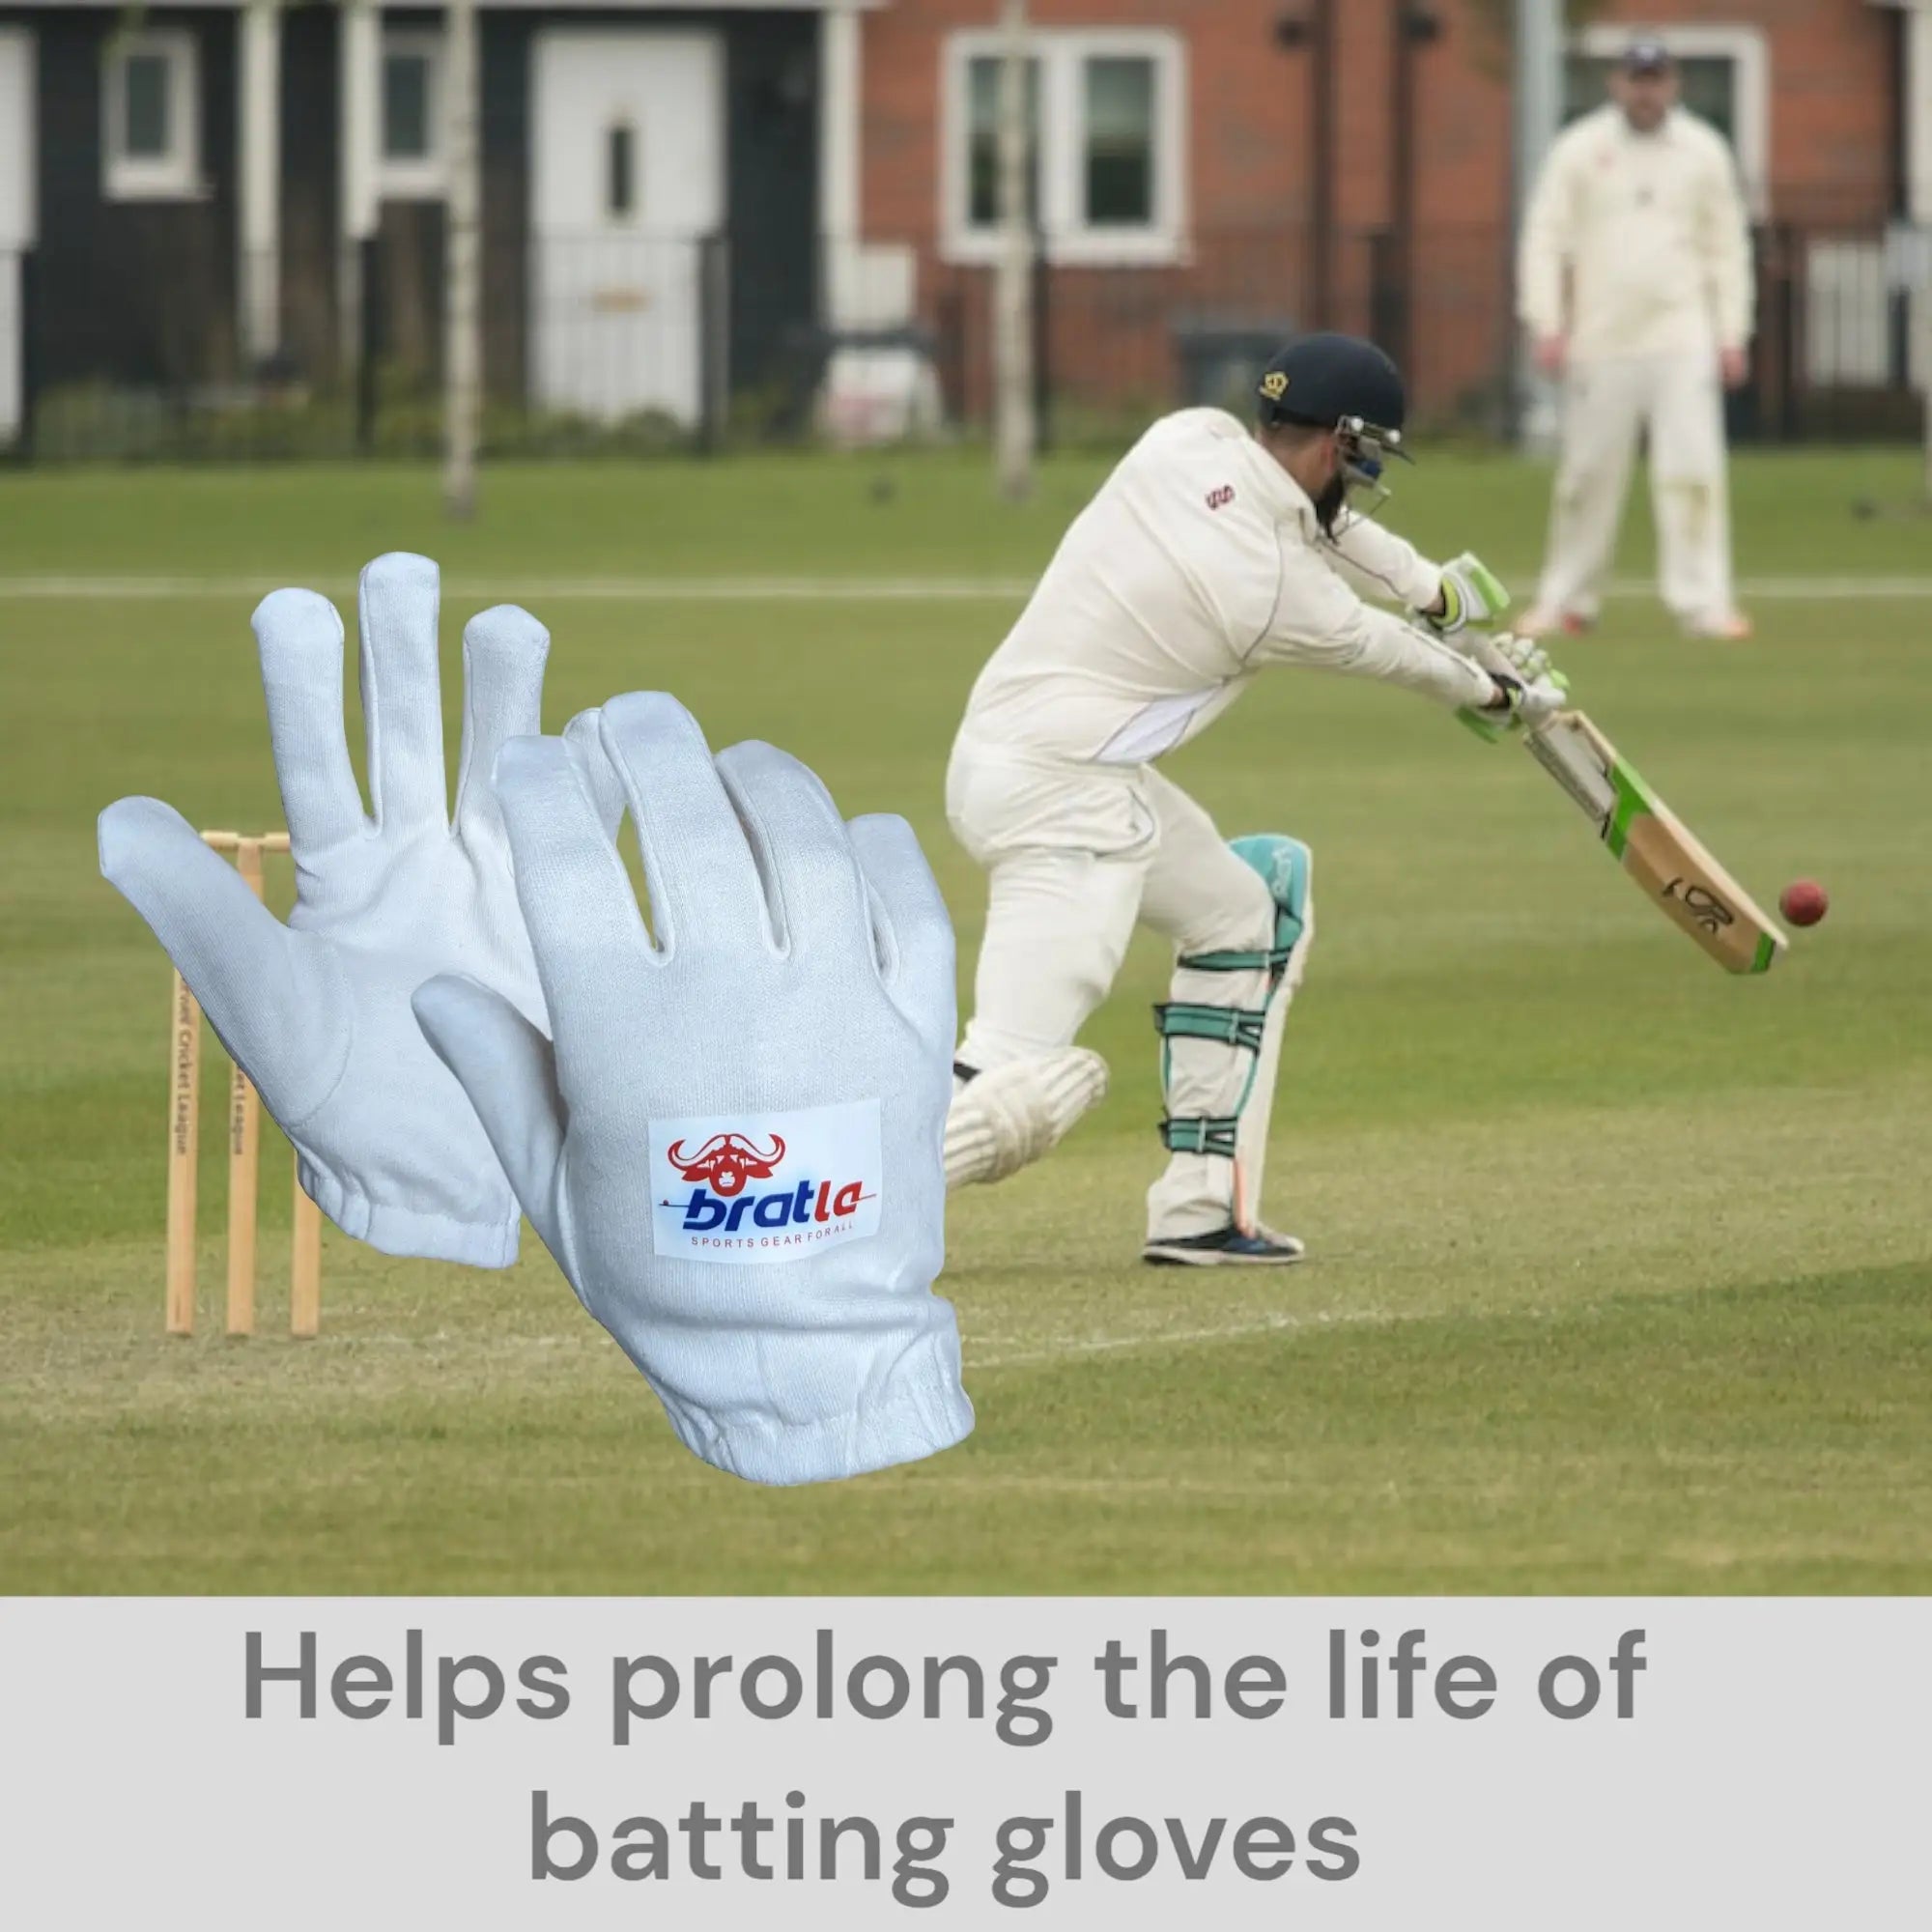 Bratla Cricket Batting Gloves Inner Pro Full Cotton | Premium Quality - GLOVE - BATTING INNER